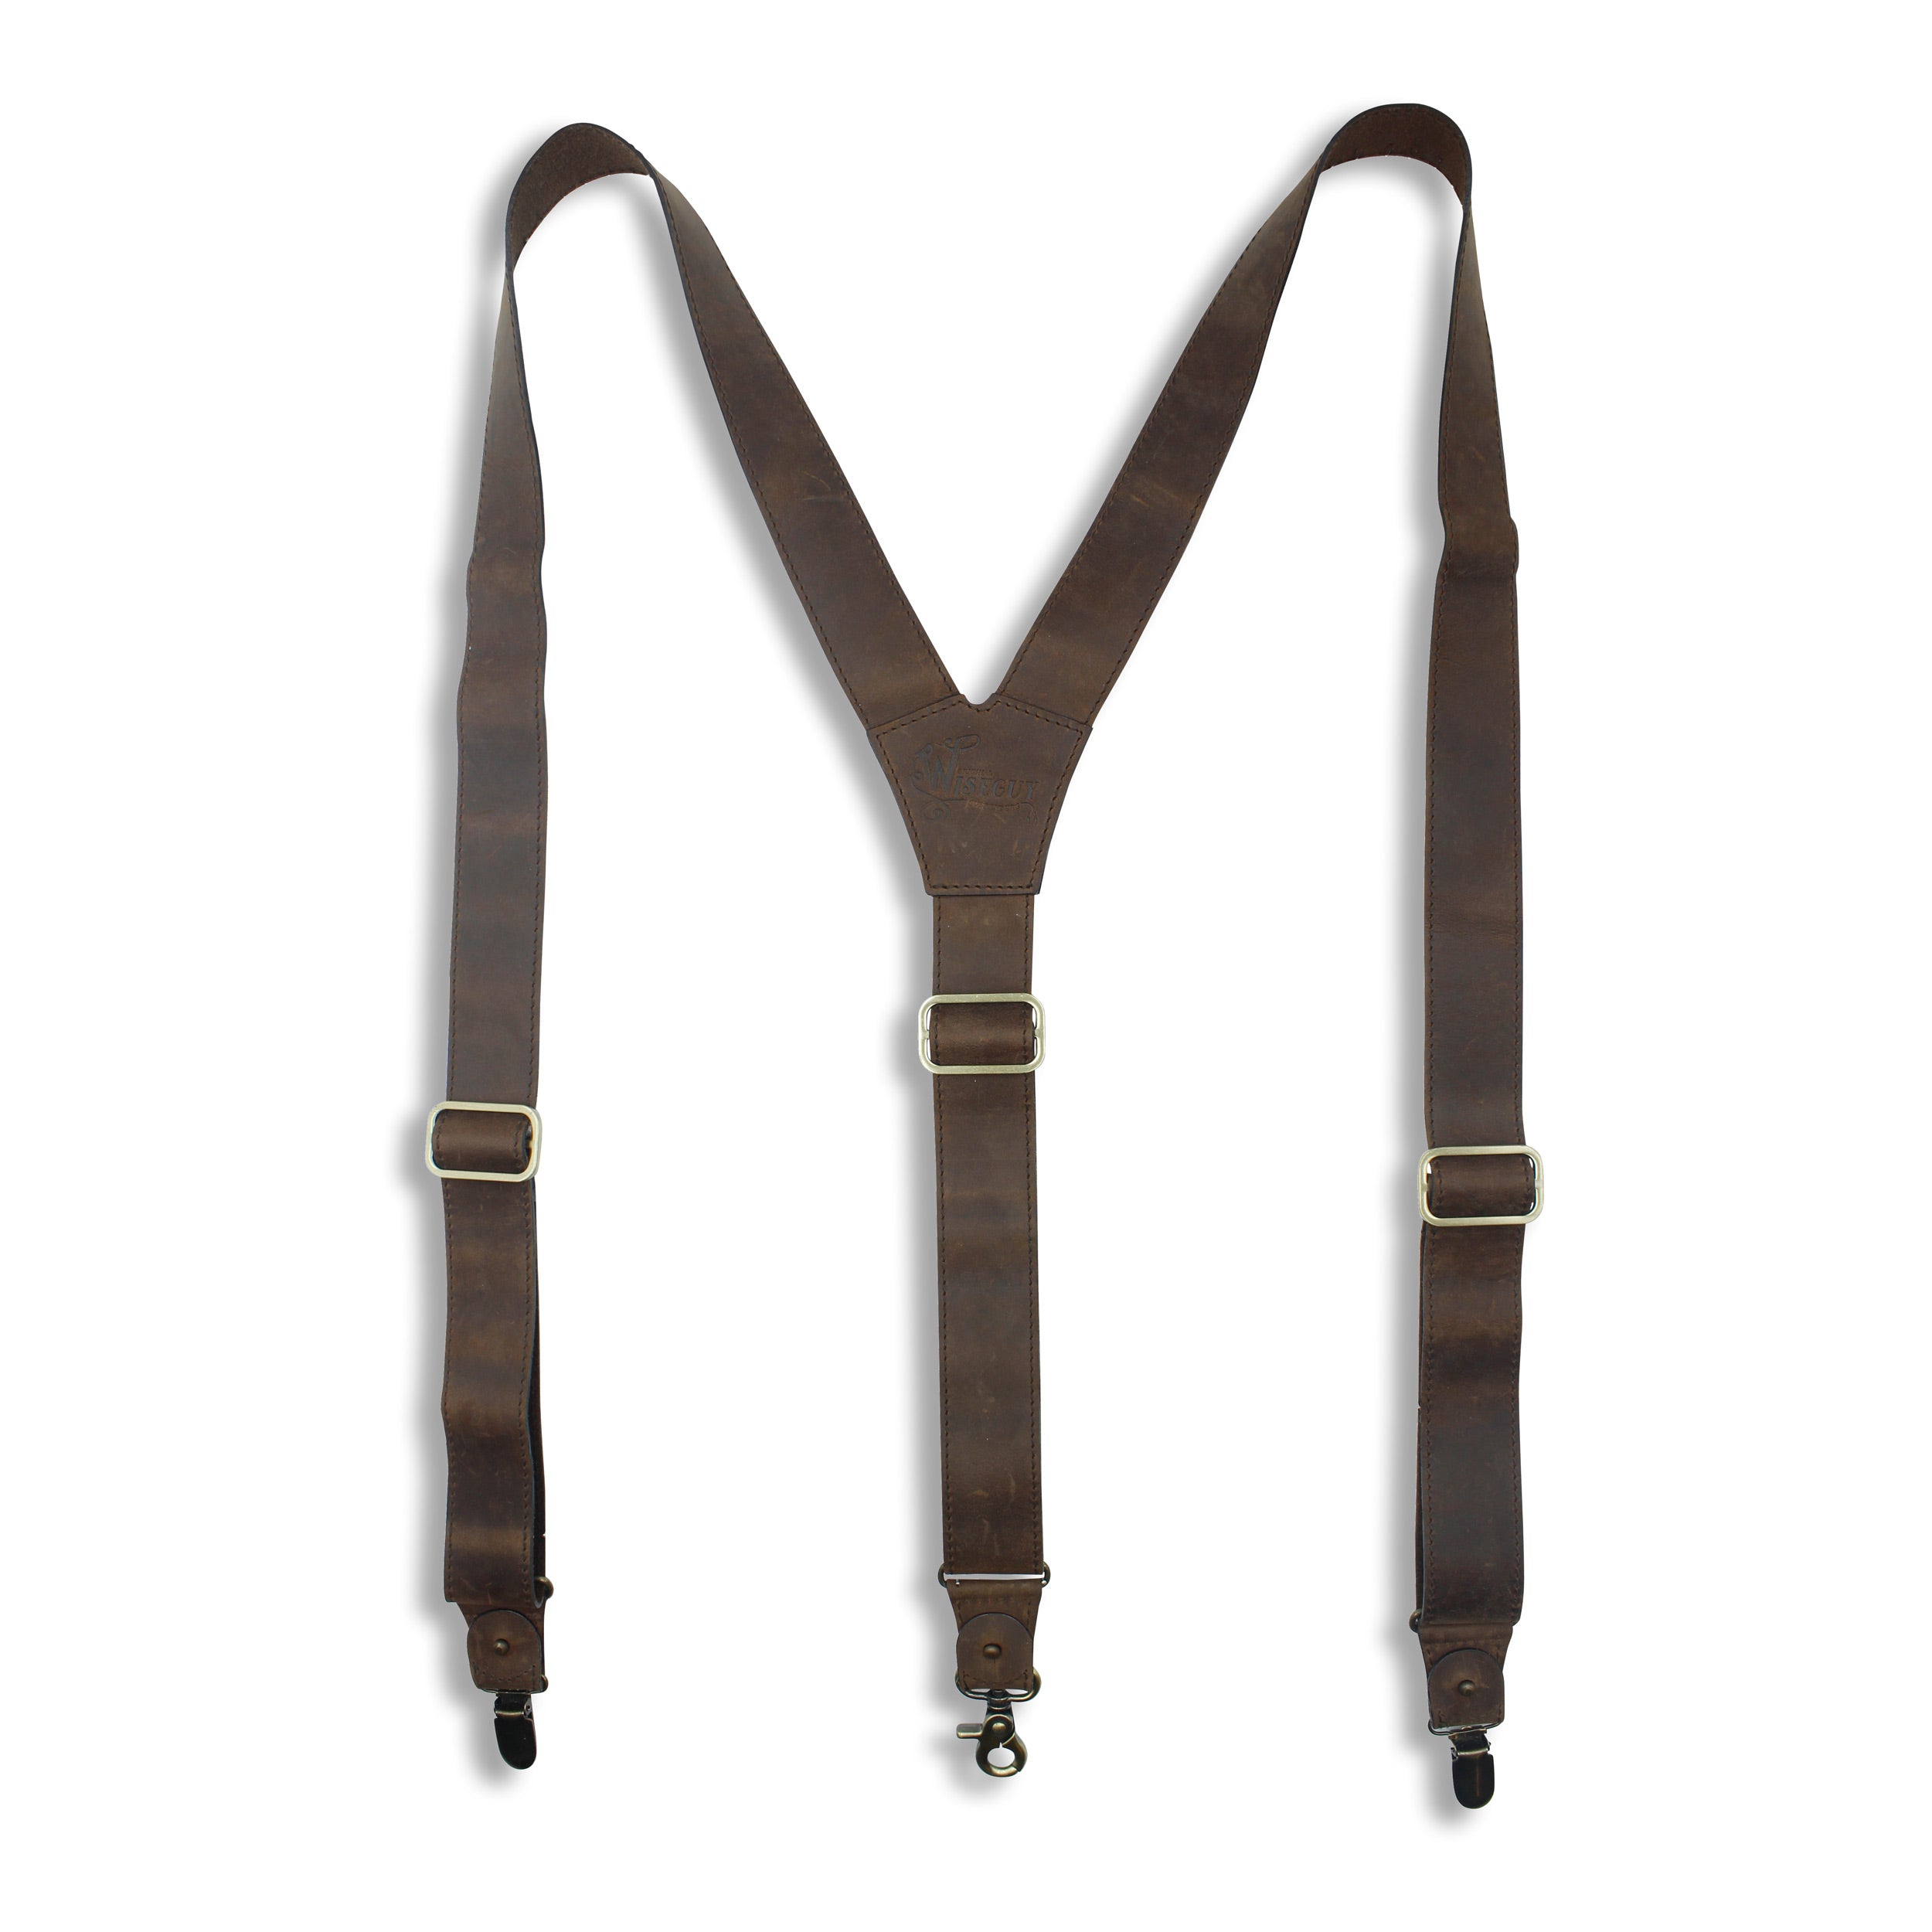 Billy the Kid - Dark Brown Leather Suspenders, 1.3 inch with Hooks - Wiseguy Suspenders